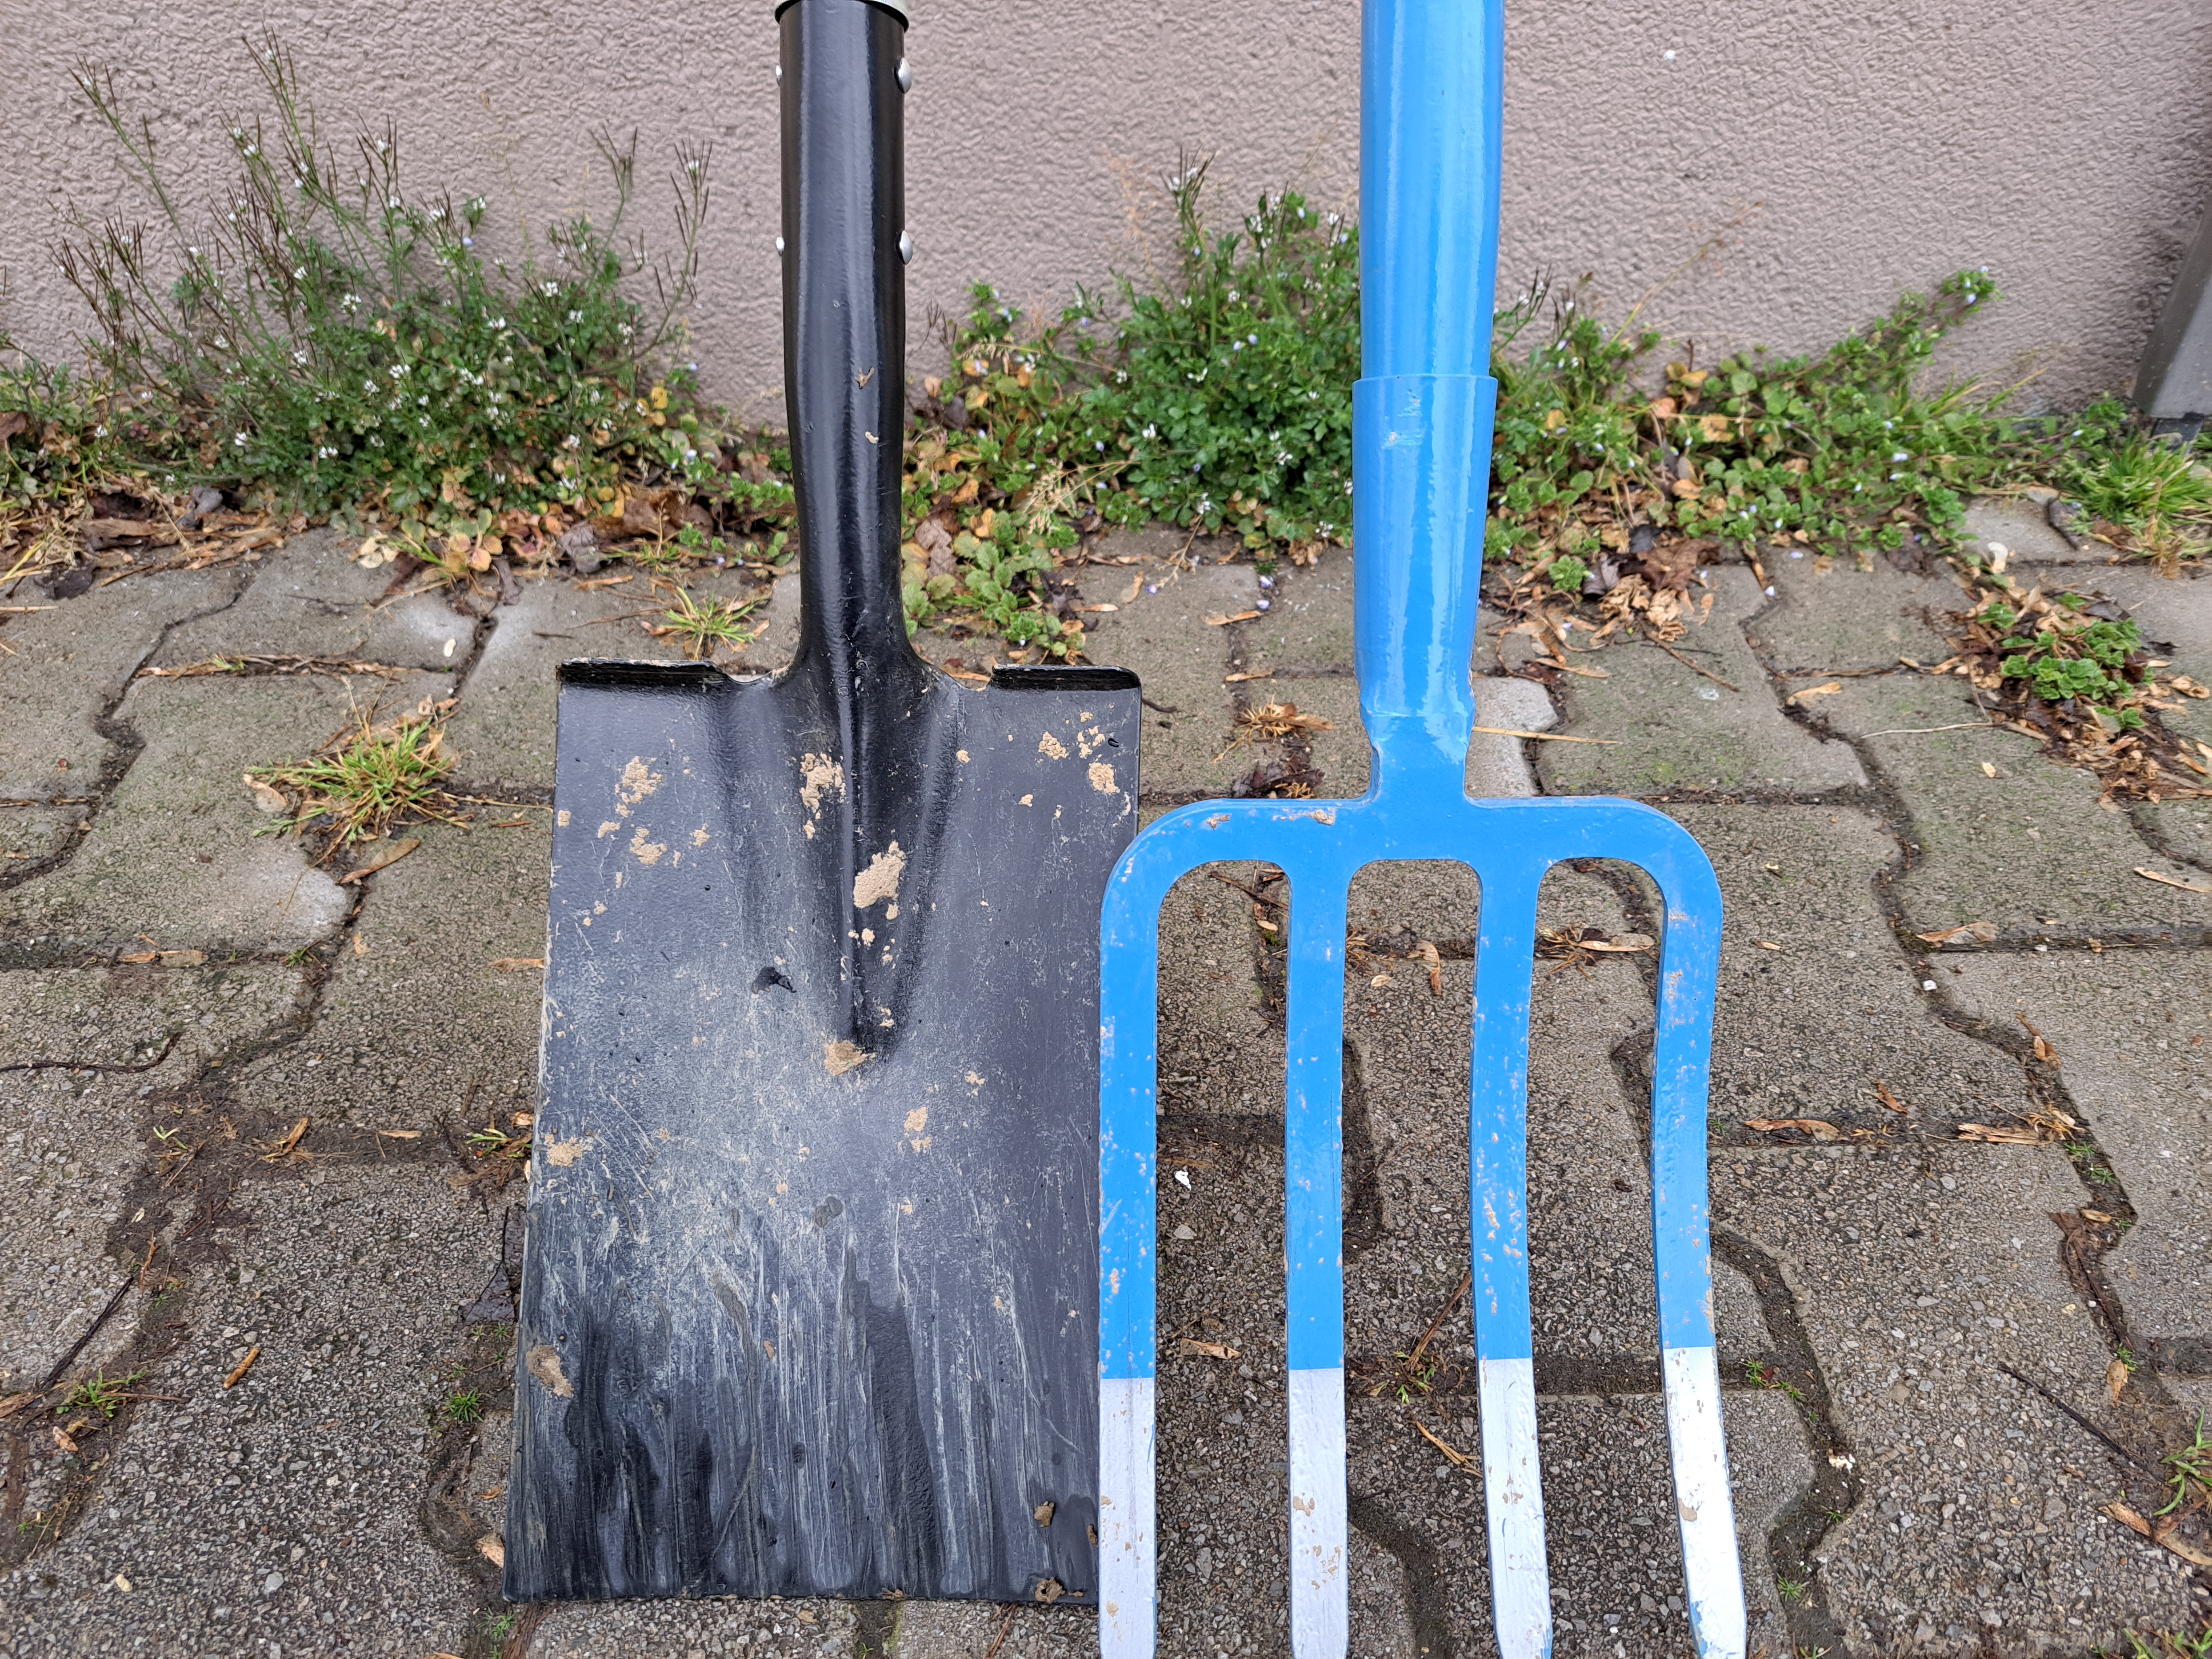 Lopata in vile za prekopavanje tal - nepogrešljivo vrtnarsko orodje, foto: Igor Škerbot